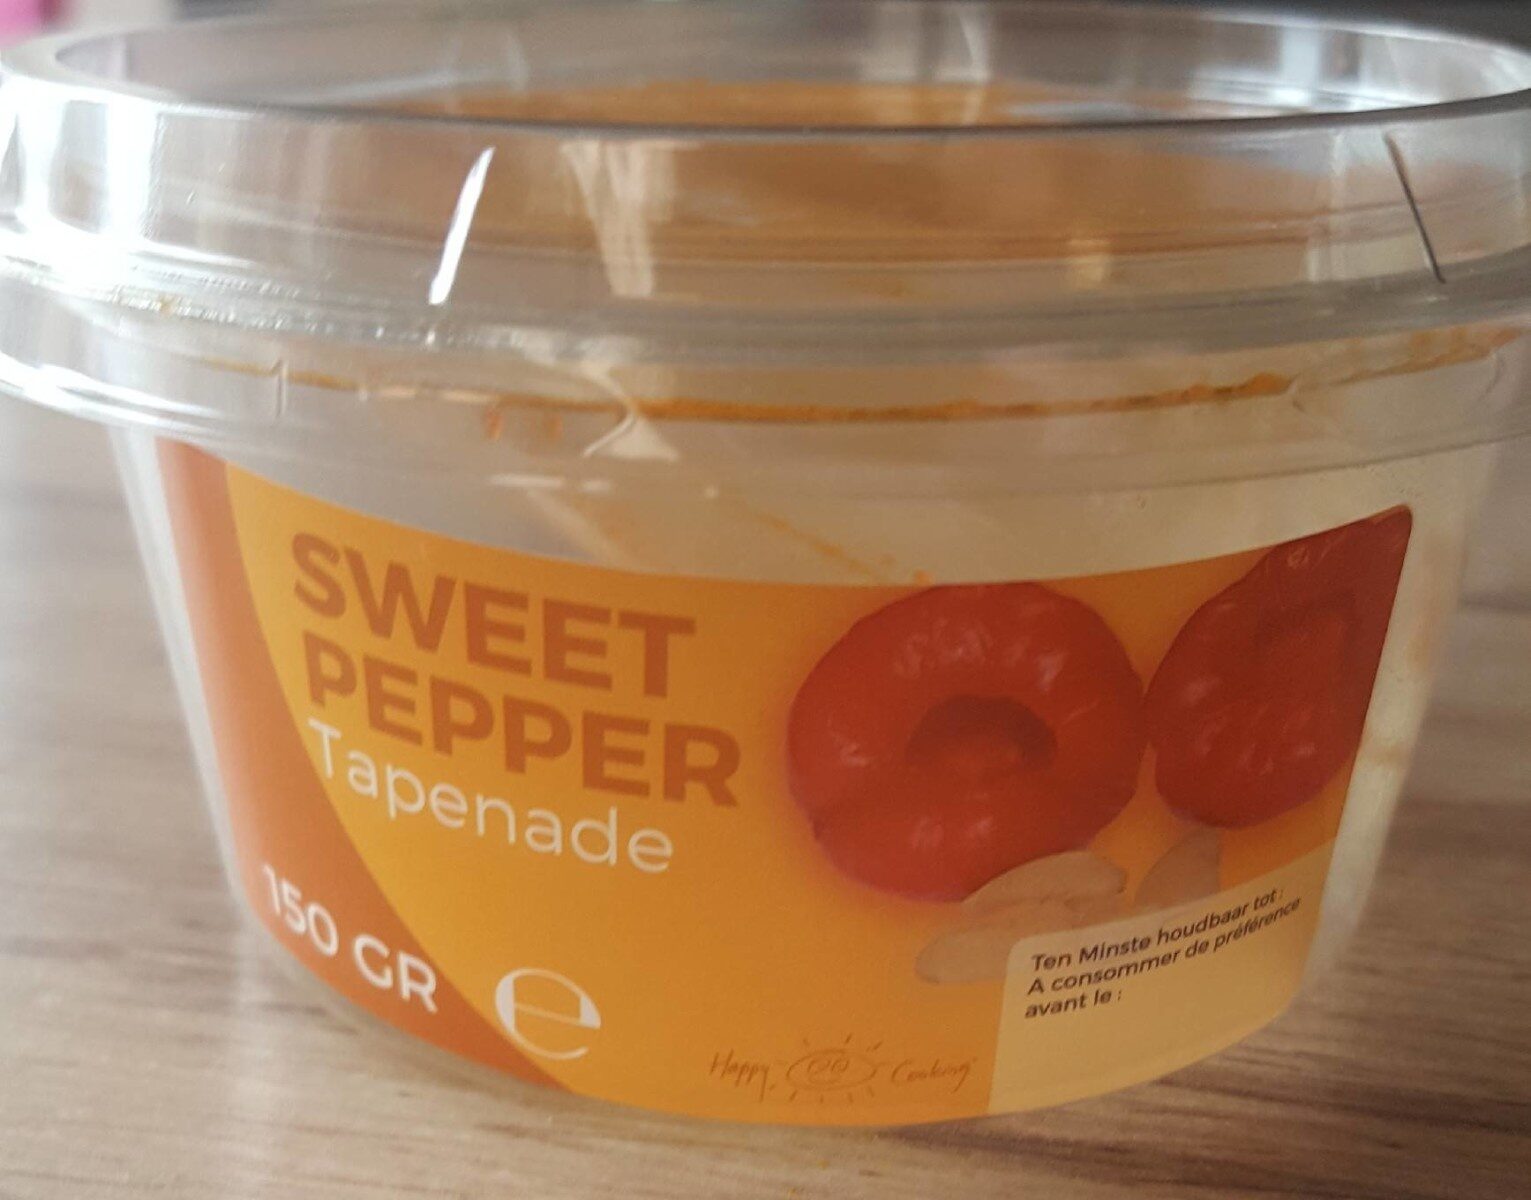 Sweet pepper tapenade - Produit